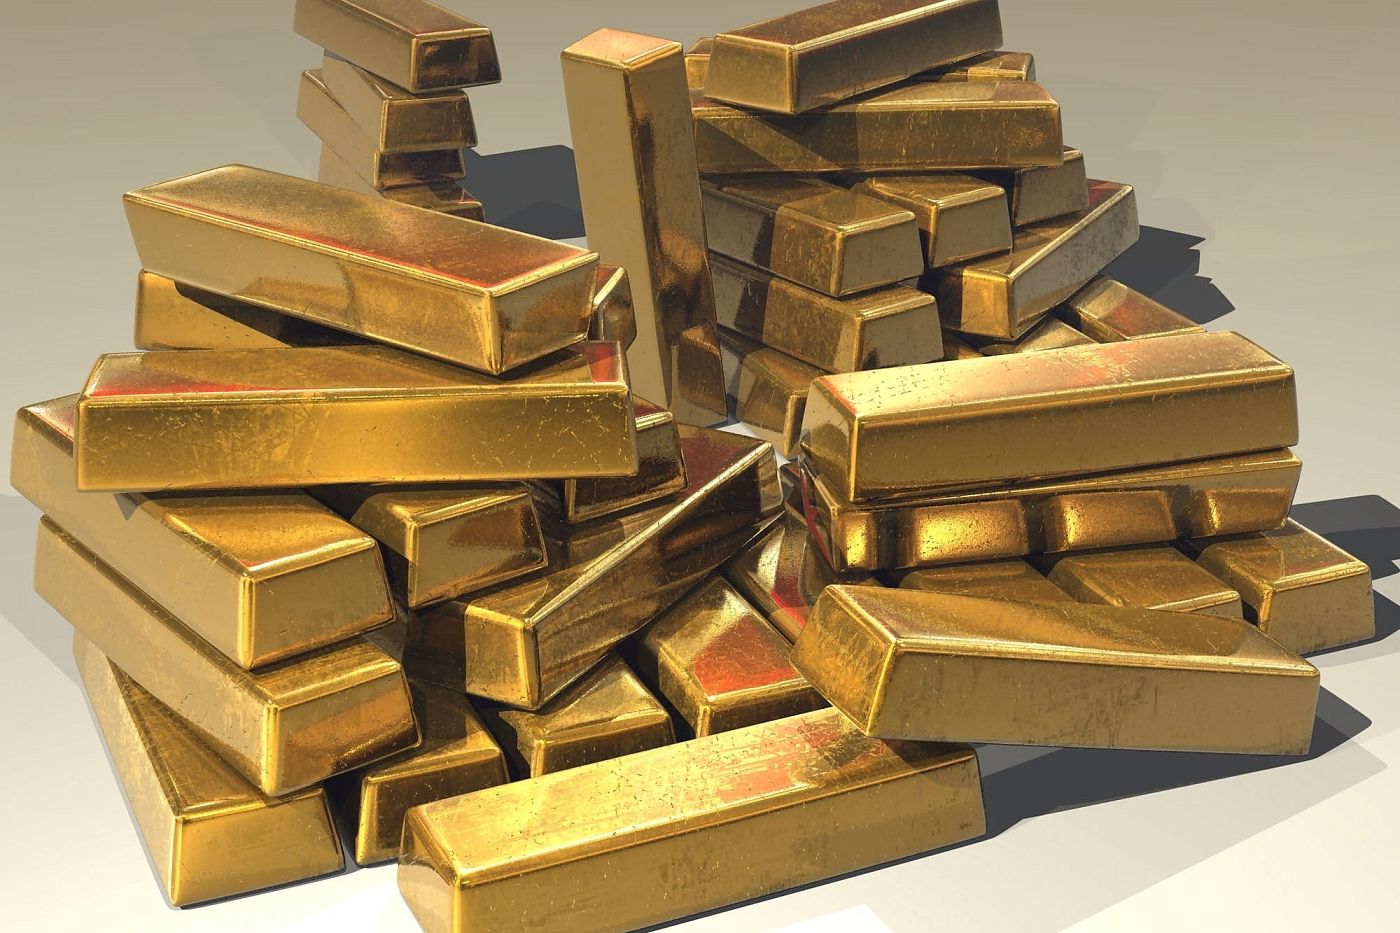 В России могут закончиться запасы золота